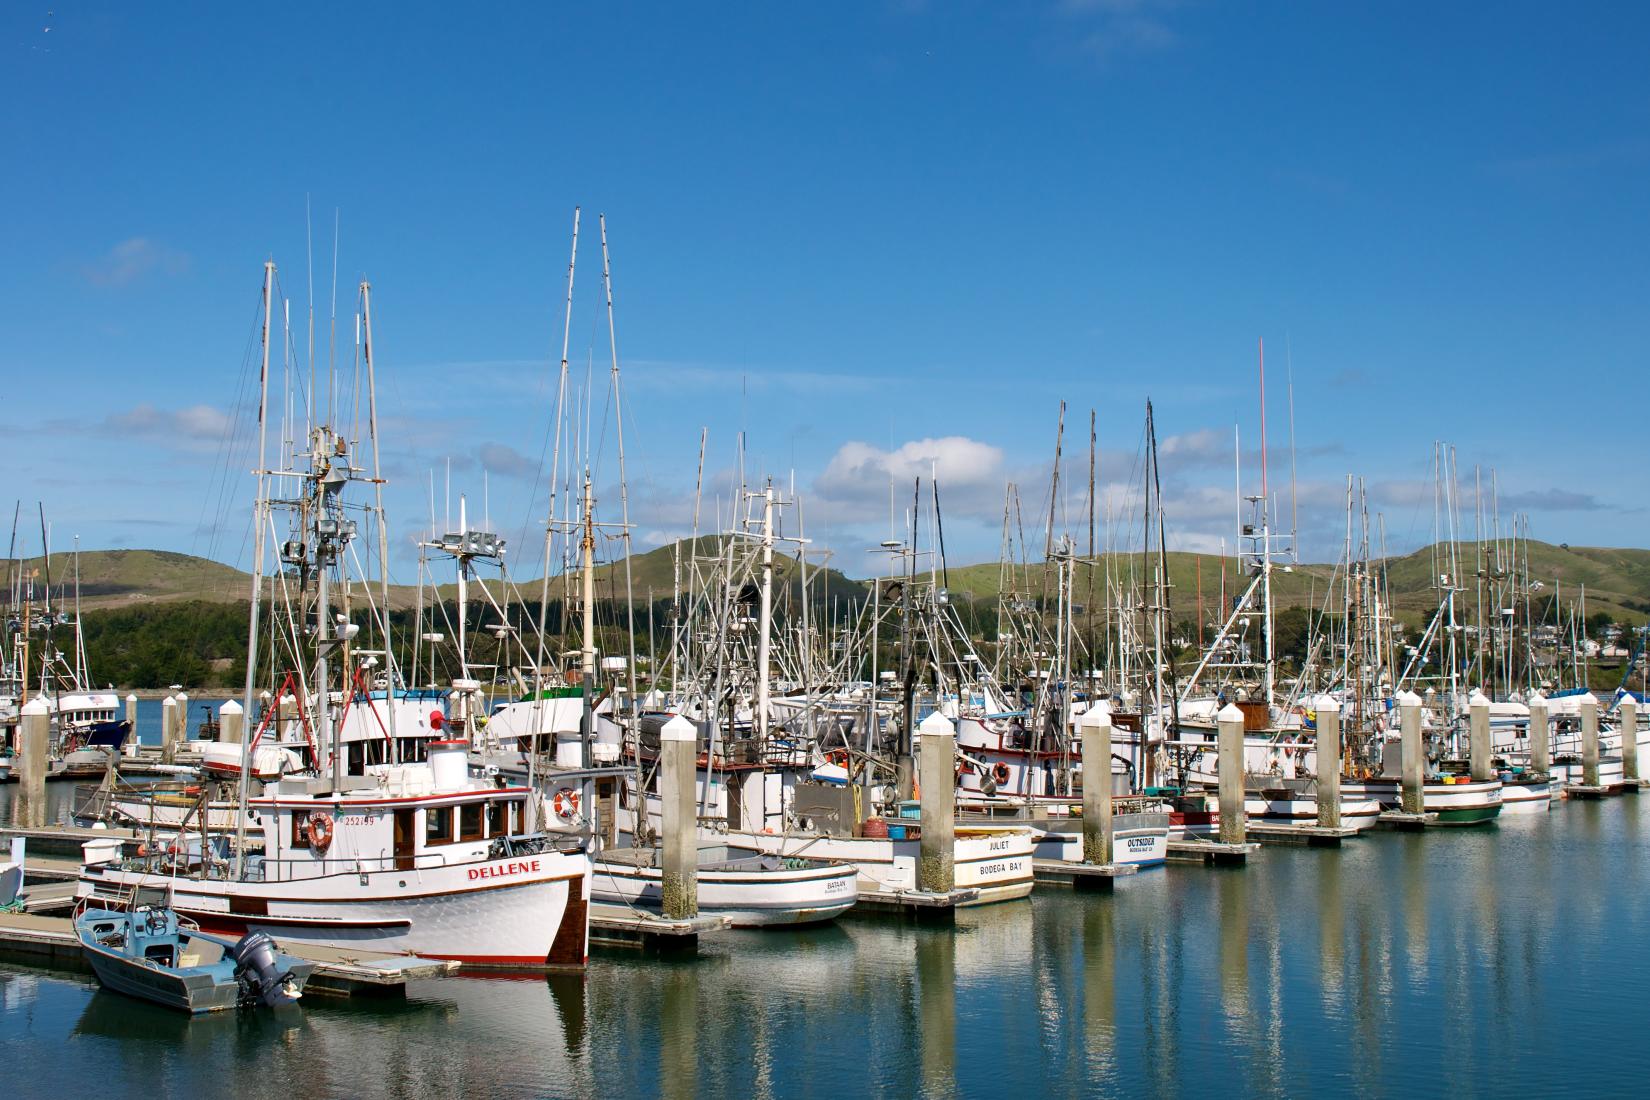 Sandee - Bodega Bay Harbor